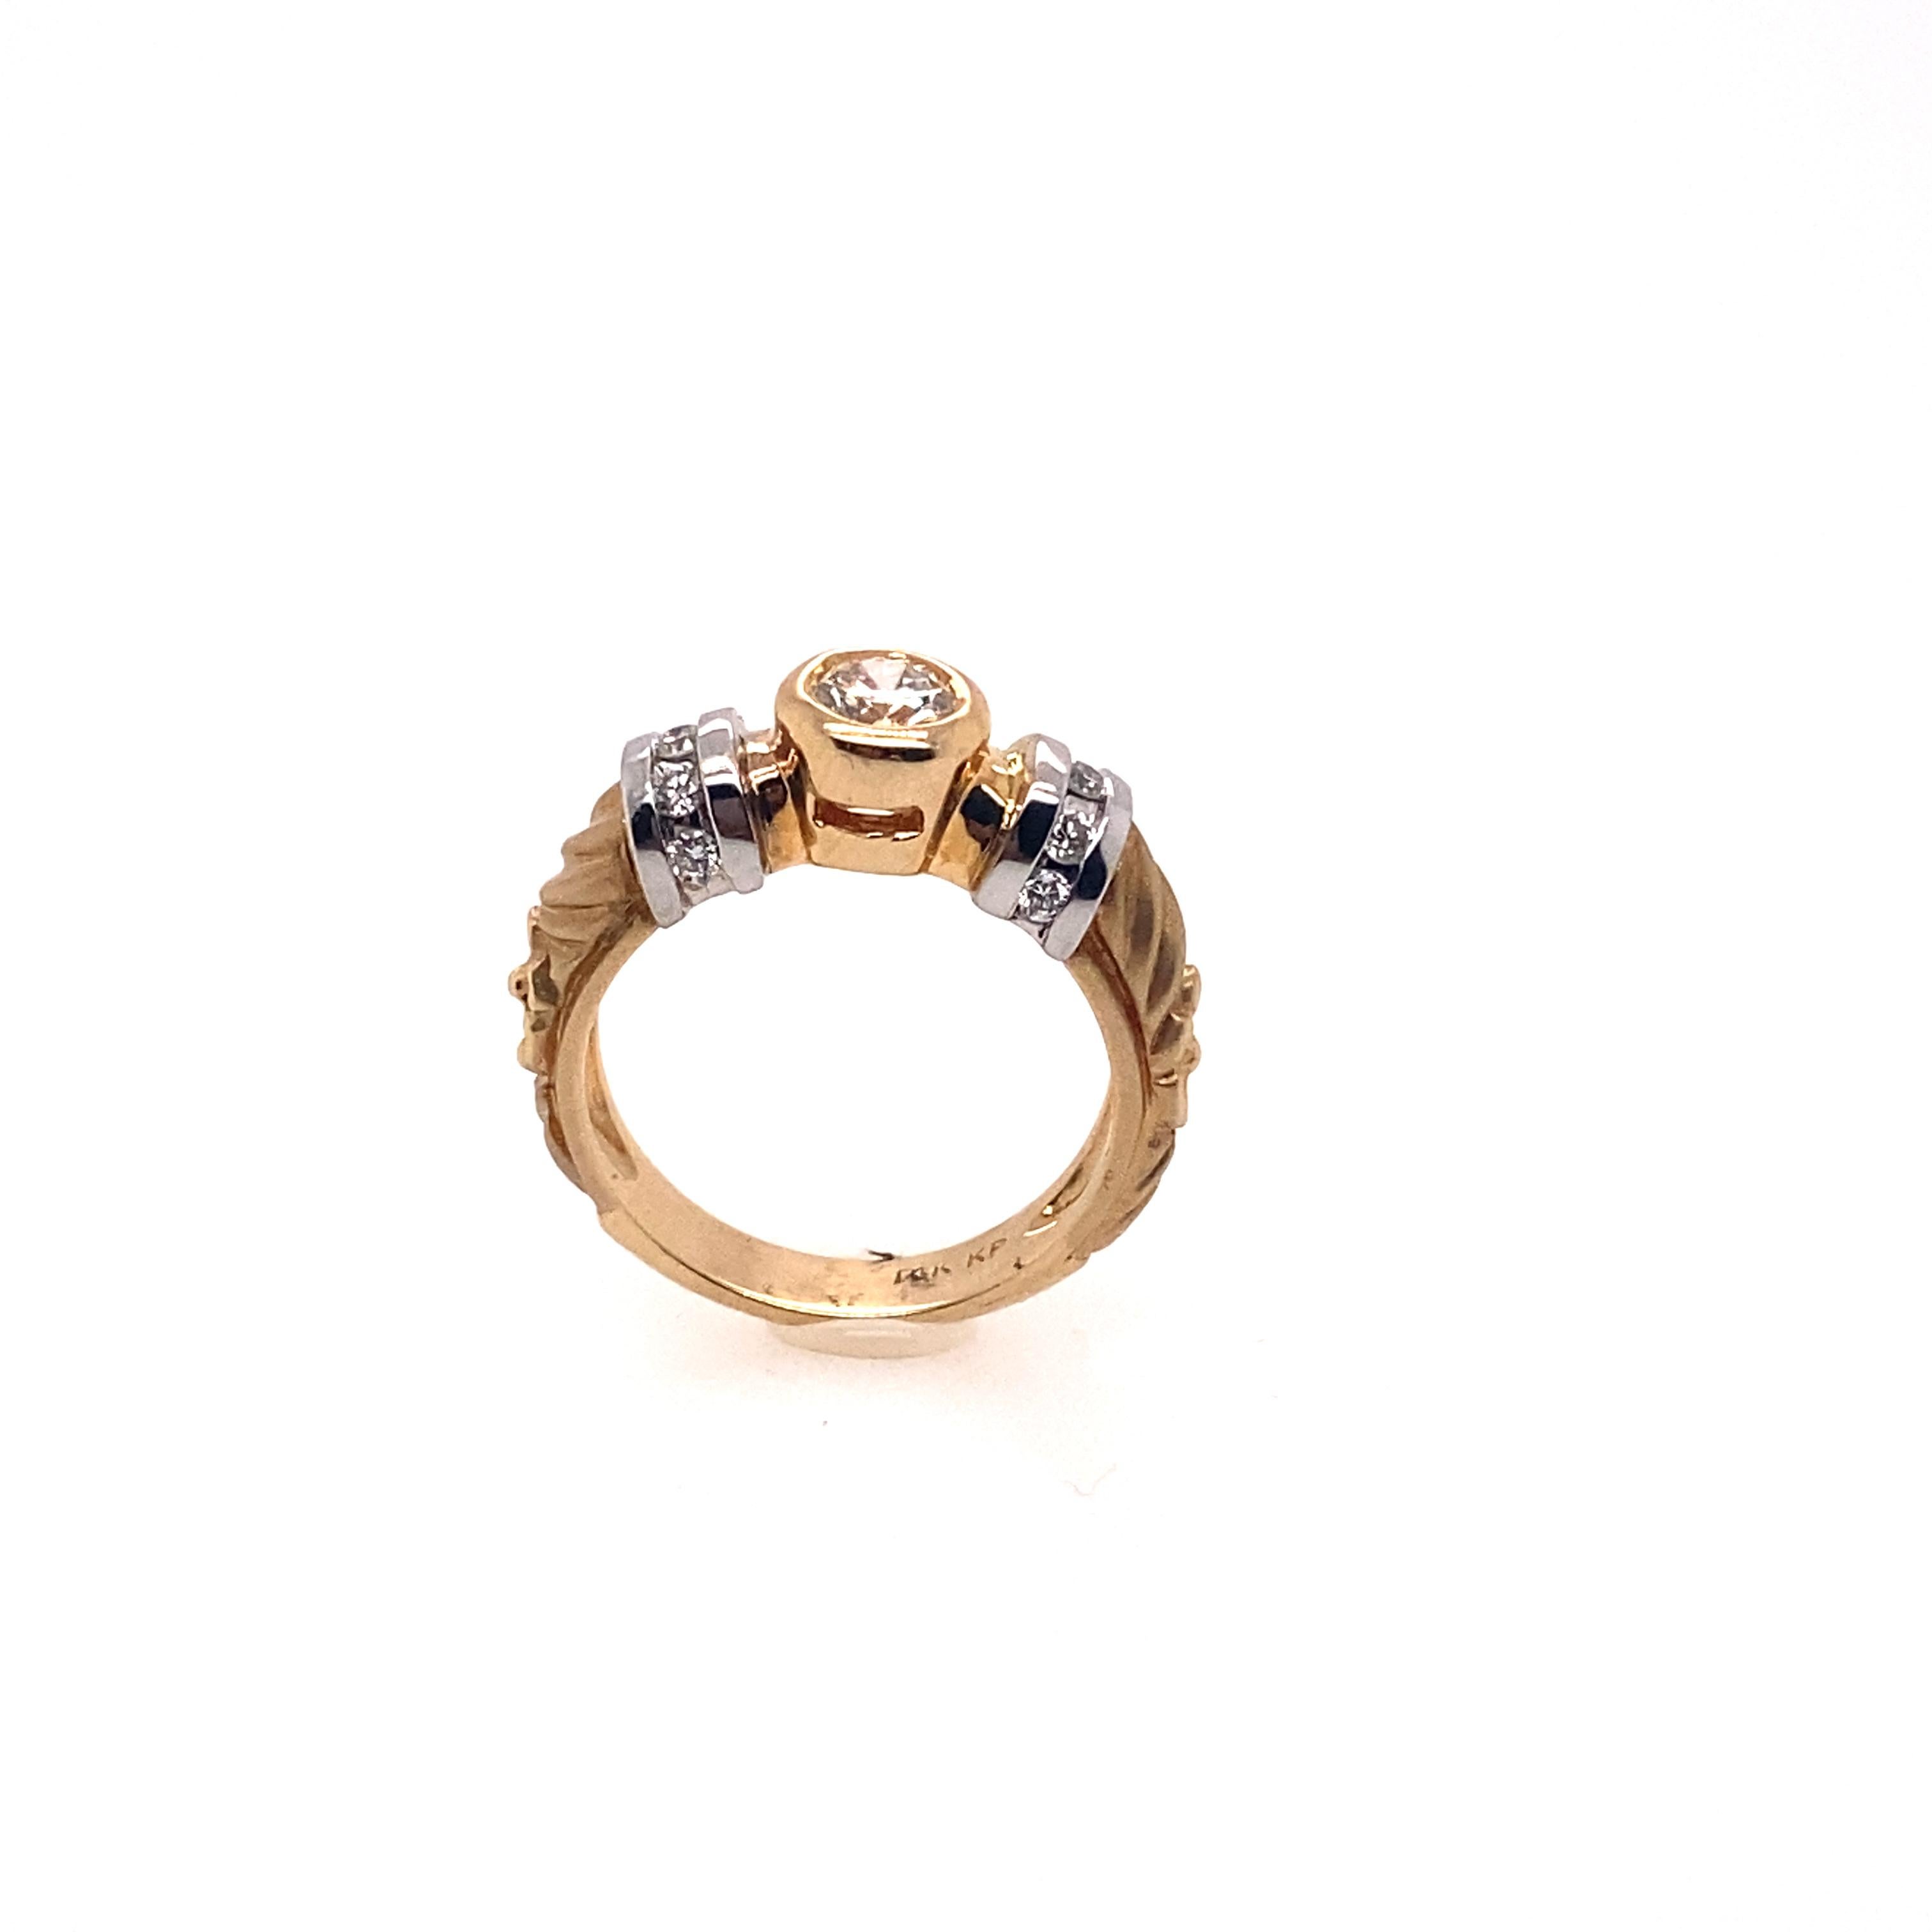 Der gesamte Schaft des Rings ist handgraviert Kunst und die Schulter des Rings ist durch das Weißgold und Seite Diamanten beschichtet. 0.72 Karat runder Diamant ist als Mittelstein montiert und dieser zweifarbige Goldring ist sehr einzigartig und